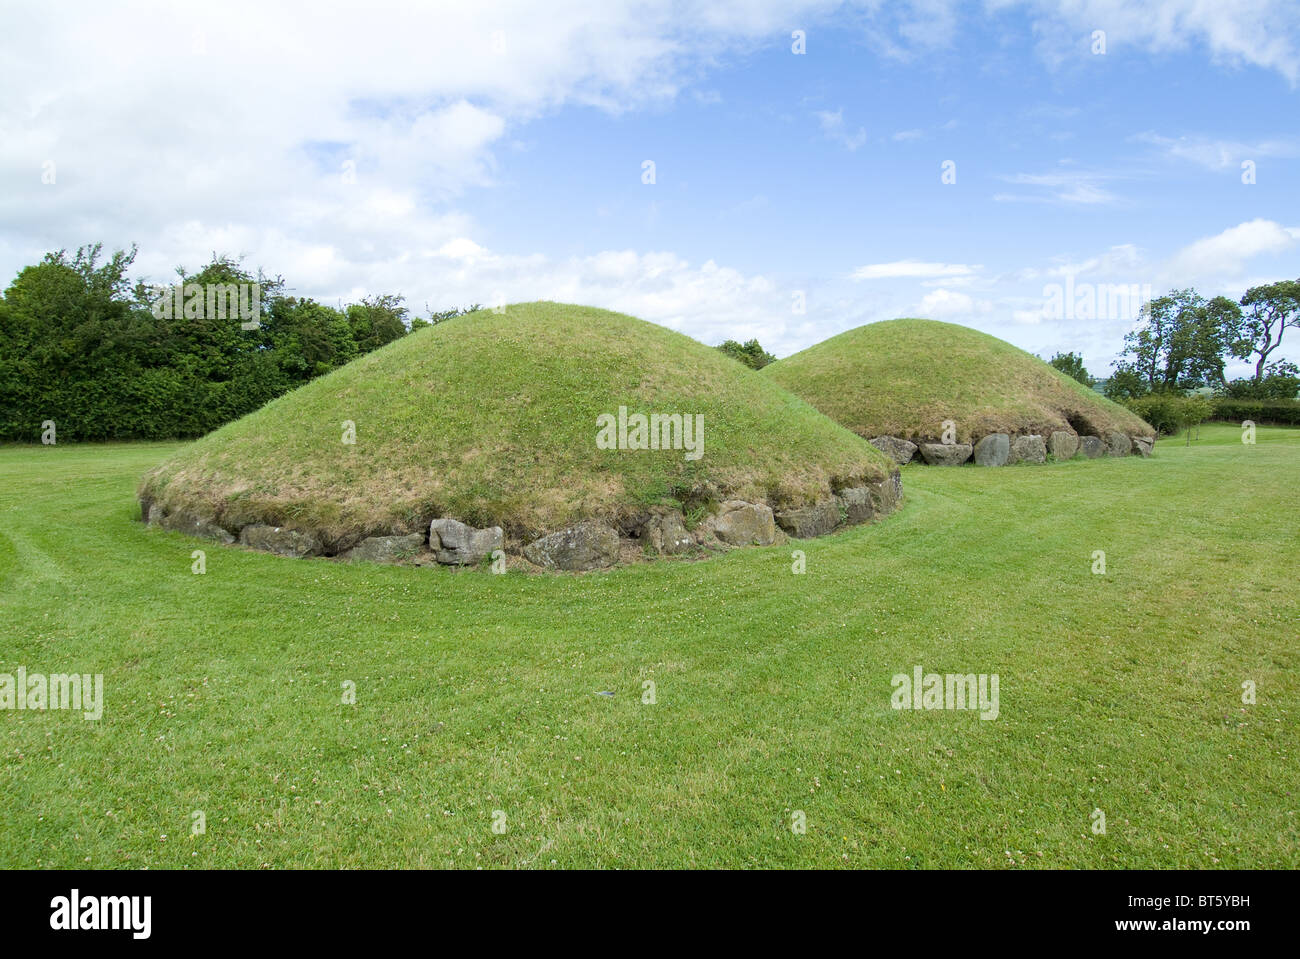 Kerb Steinen Schnitzereien große Hügel Knowth Irland Süden südliche Eire Rasen Prhistoric keltischen Irland Hügel Bestattung zeremonielle land Stockfoto